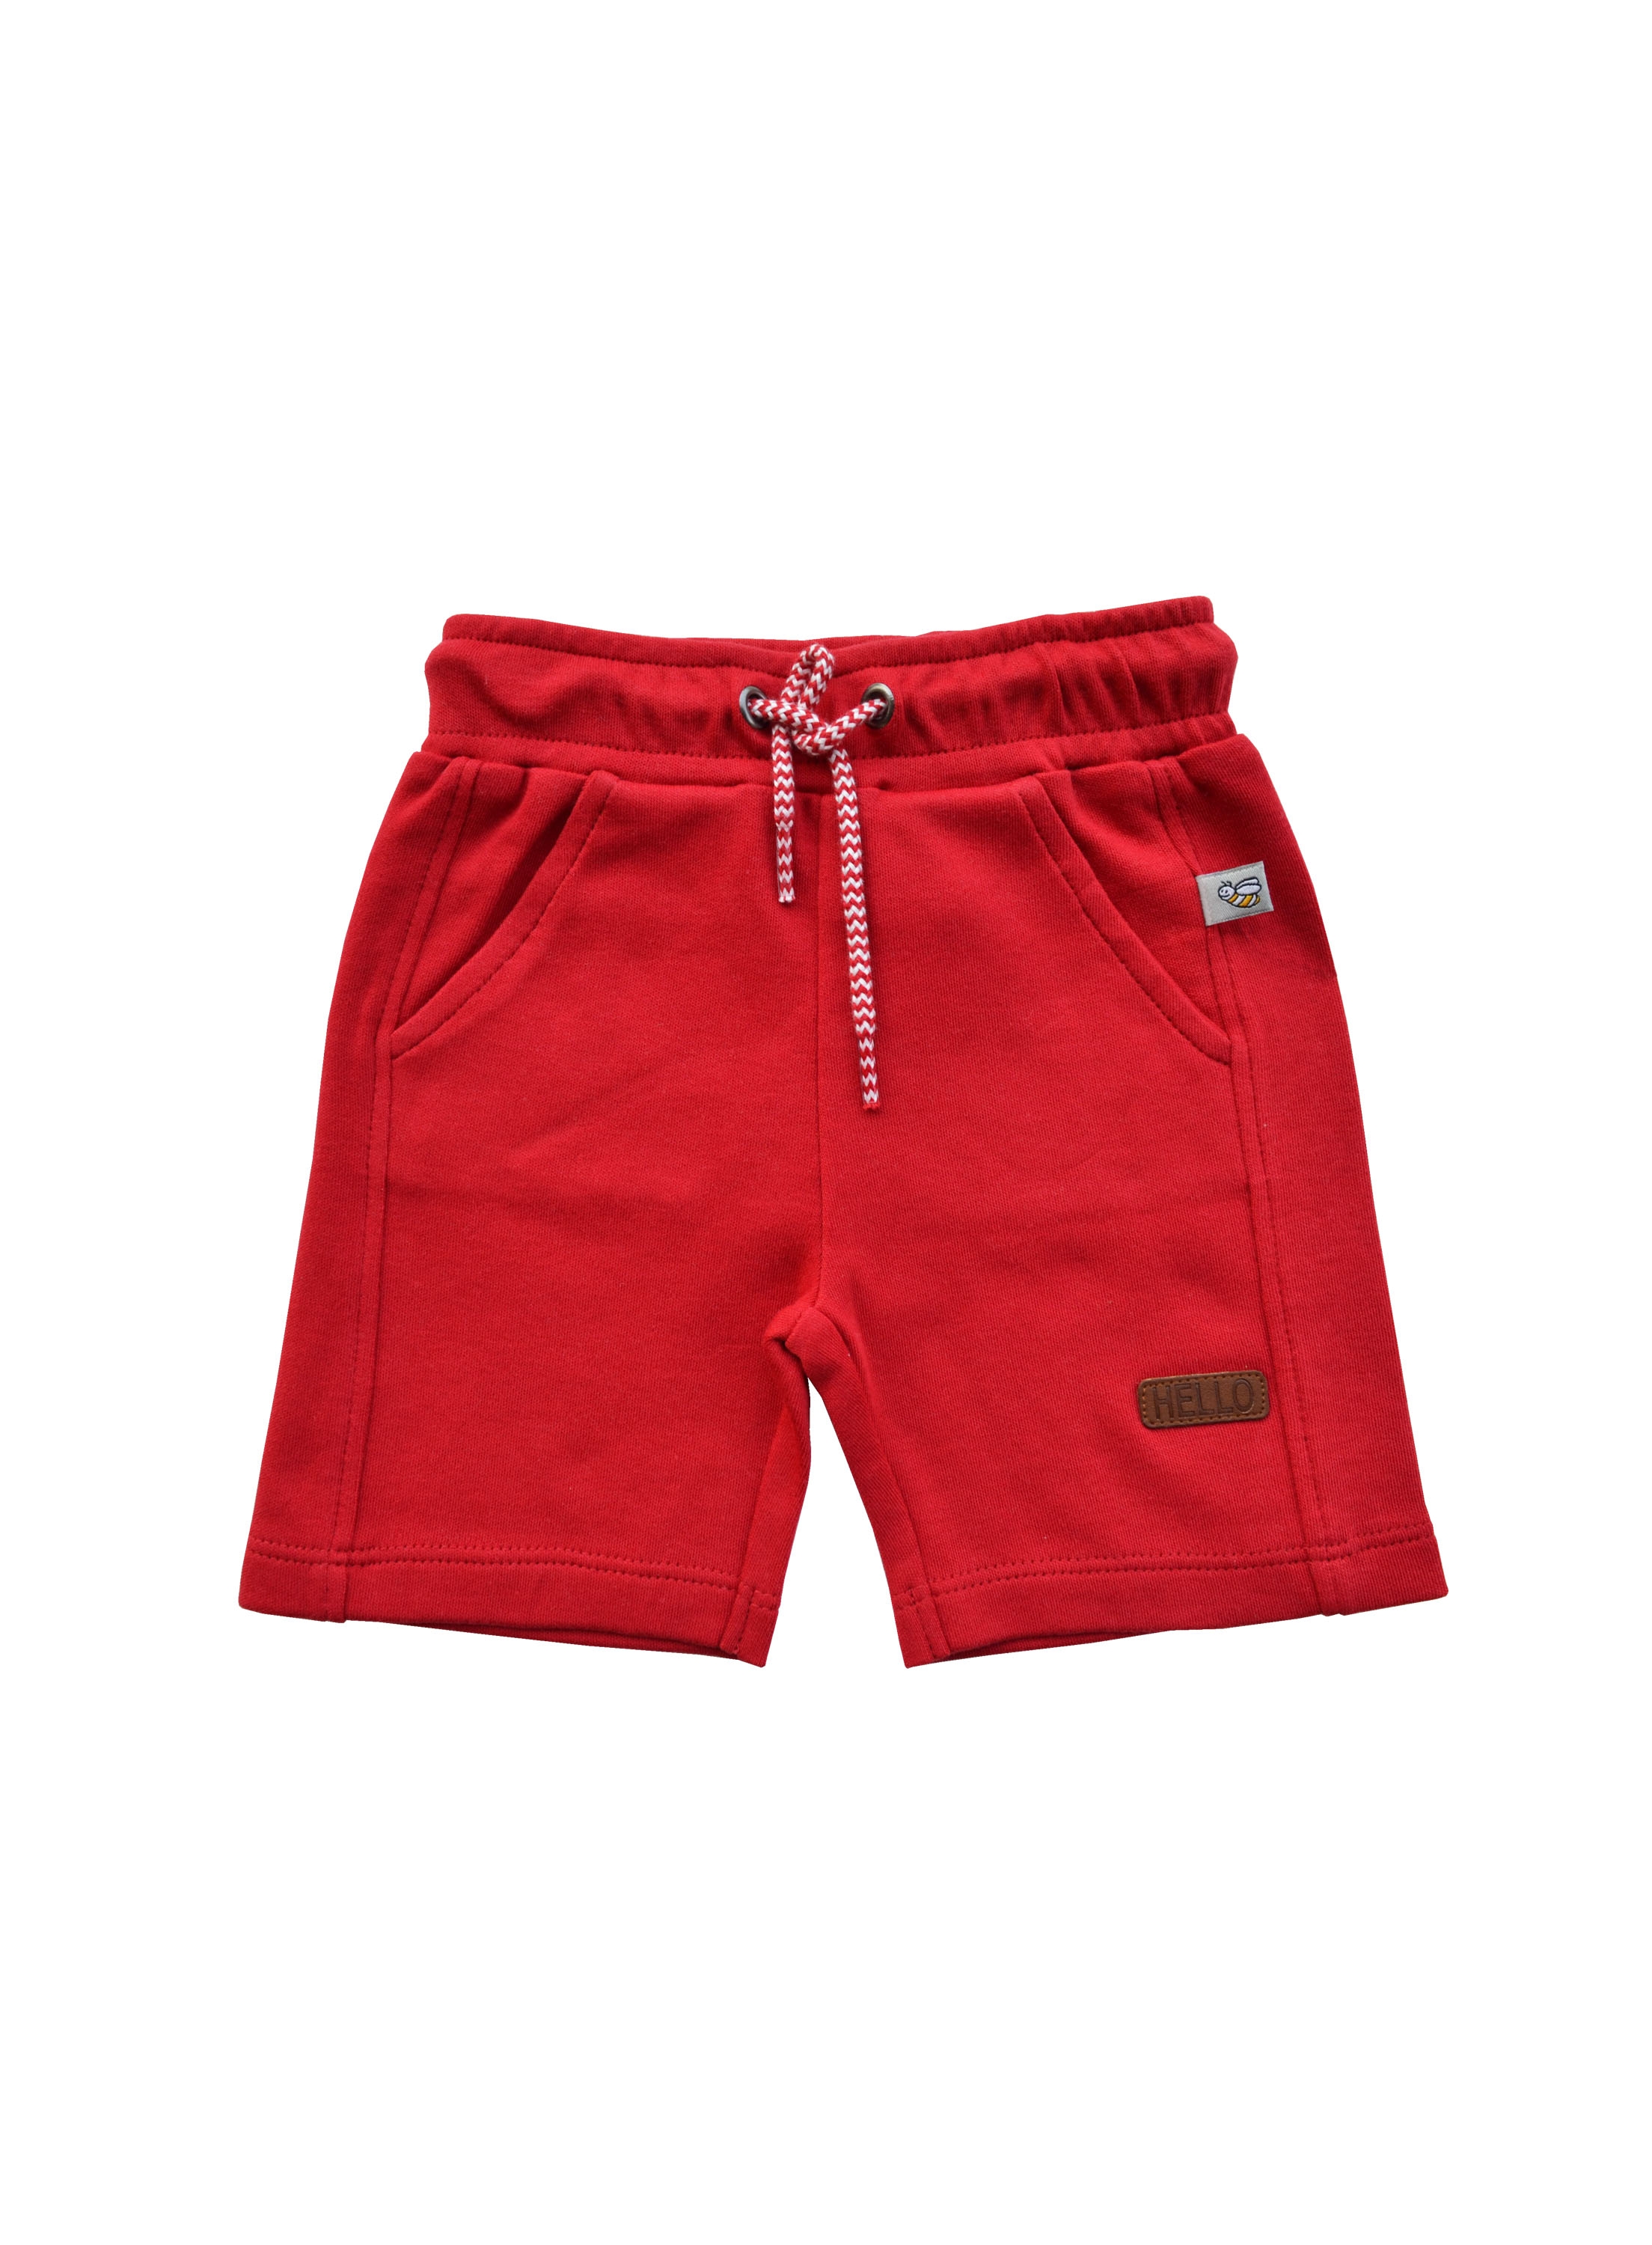 Babeez | Red Shorts (100% Cotton Interlock Biowash) undefined